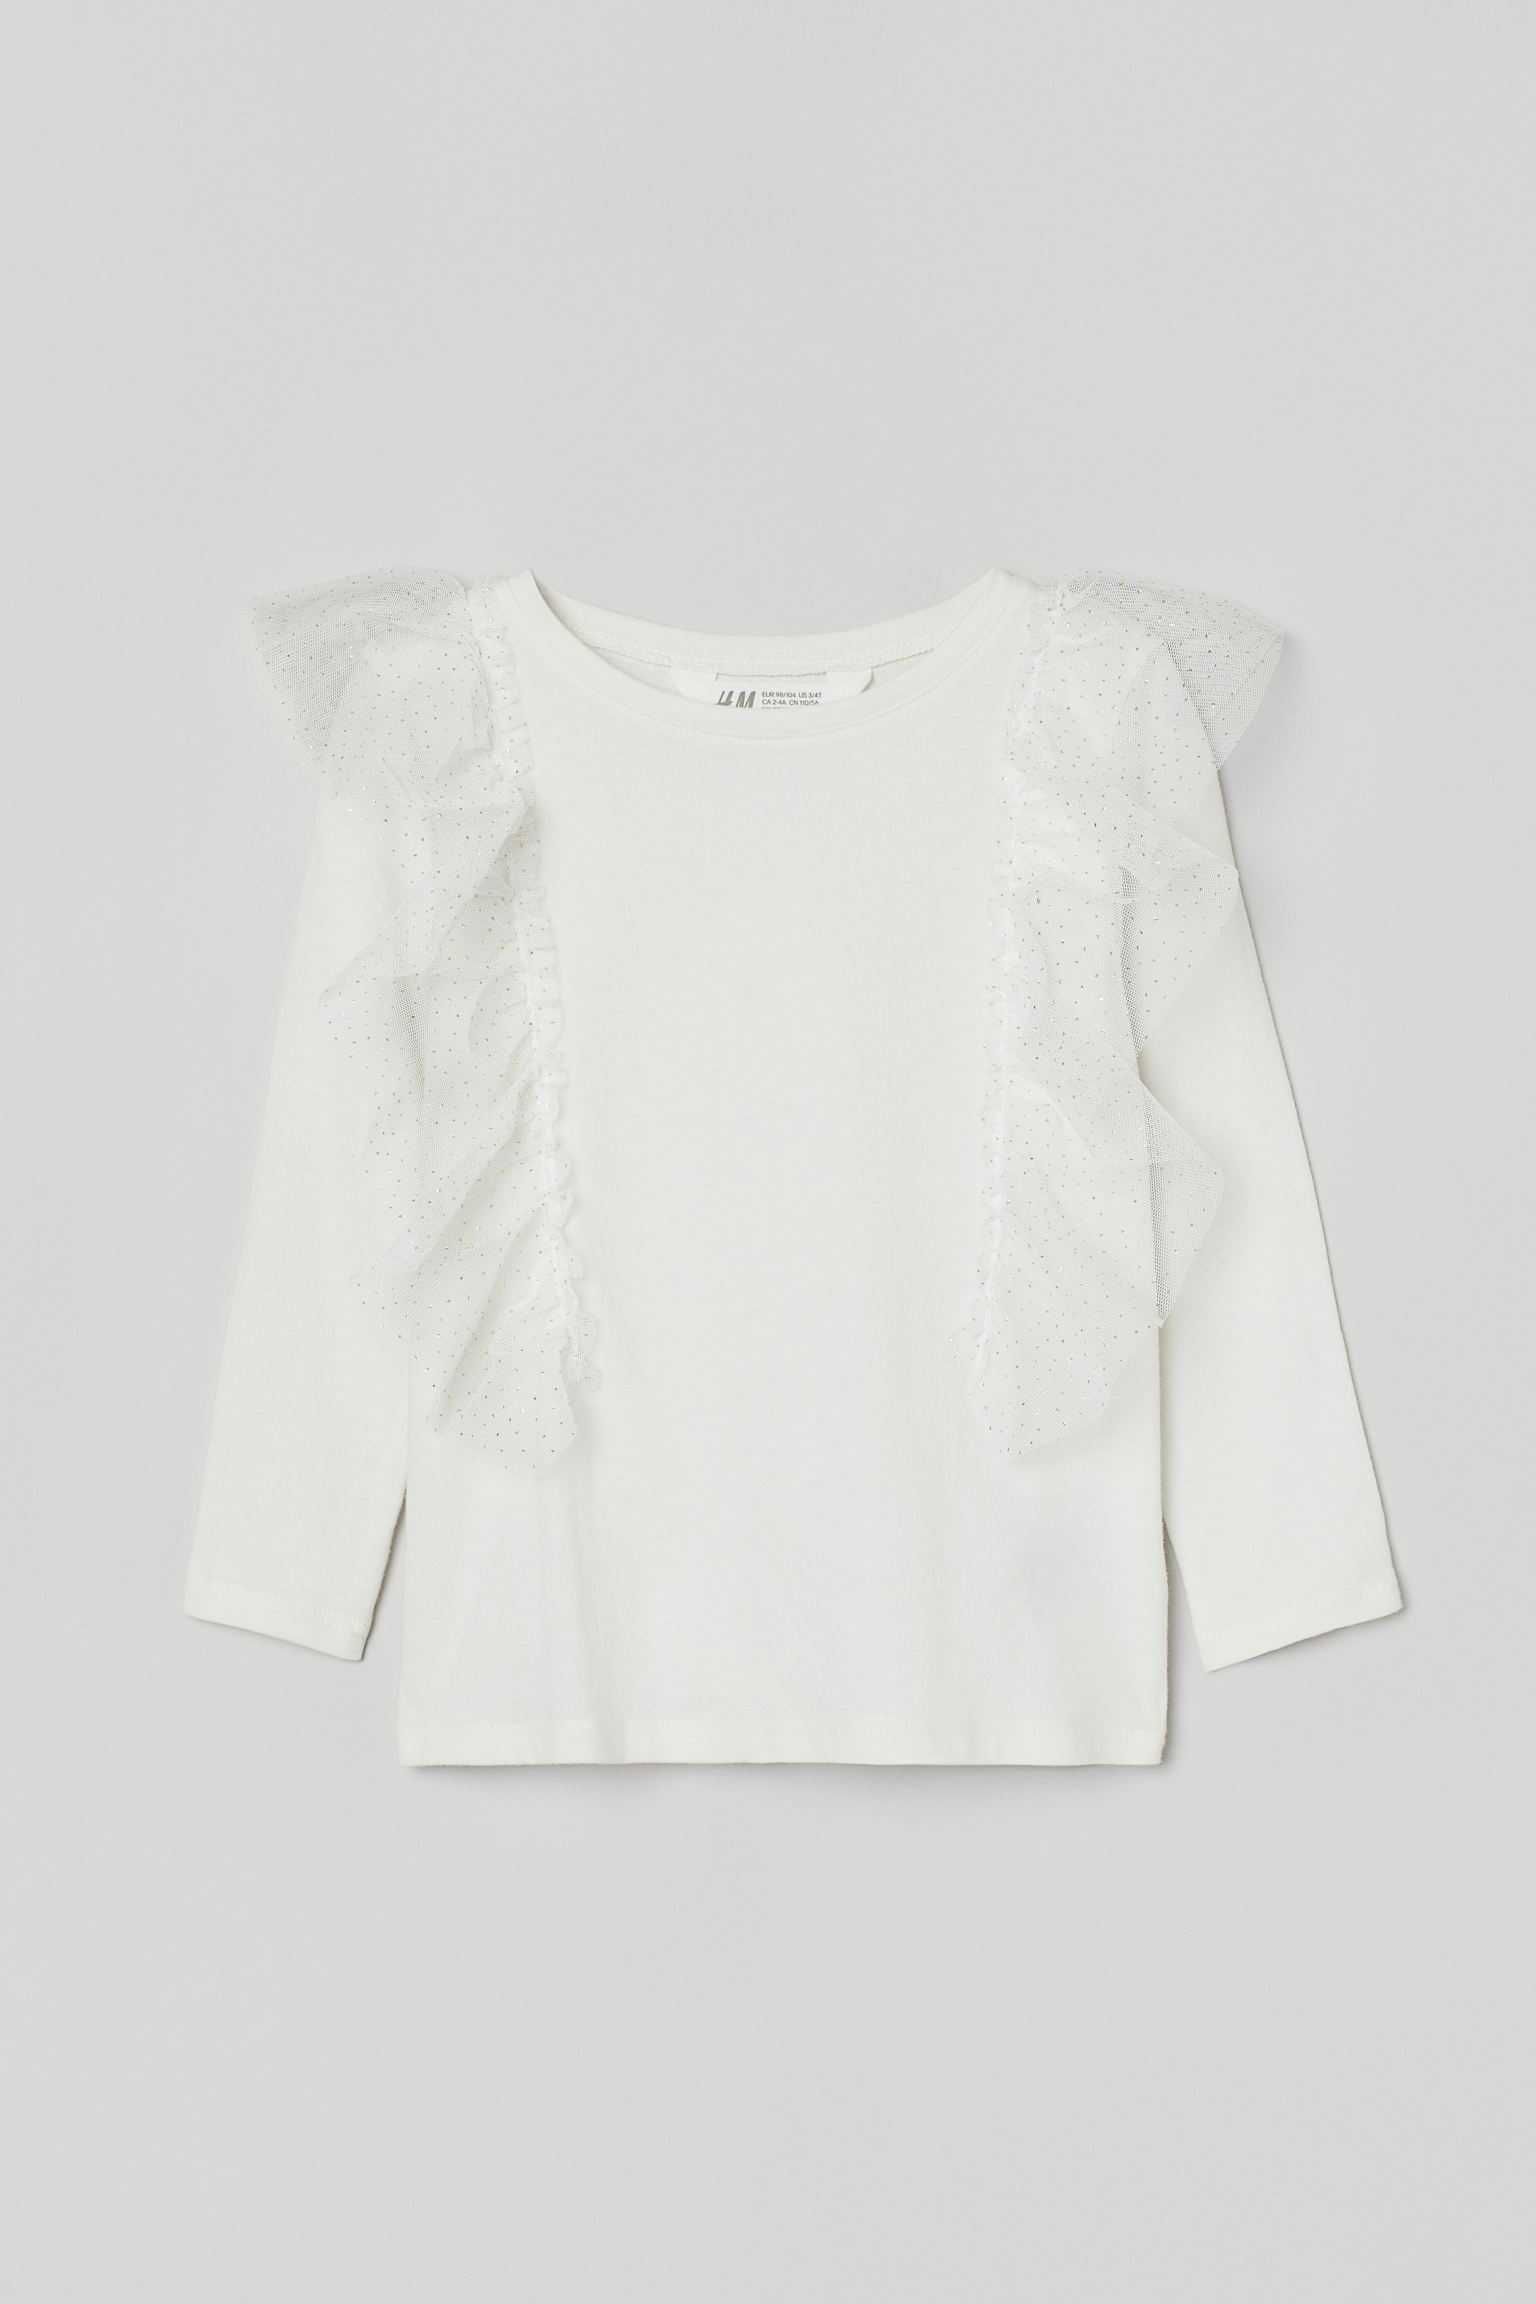 Нова біла нарядна кофта, реглан у школу H&M на дівчинку 8-10 років